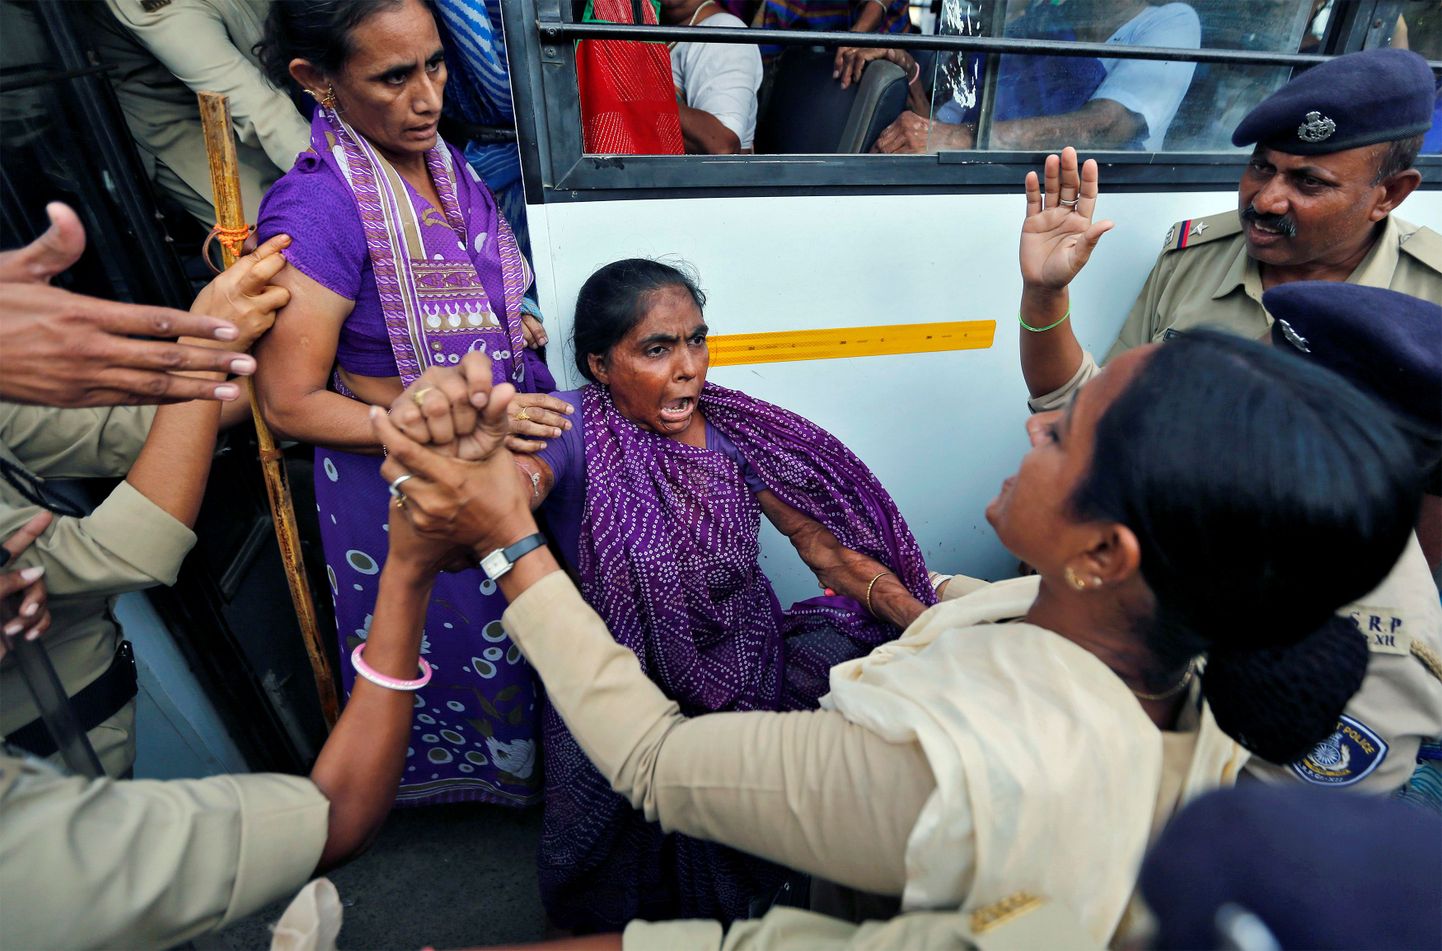 Daliti kastist naine reageerimas, kui politsei üritab teda protesti käigus kinni pidada.